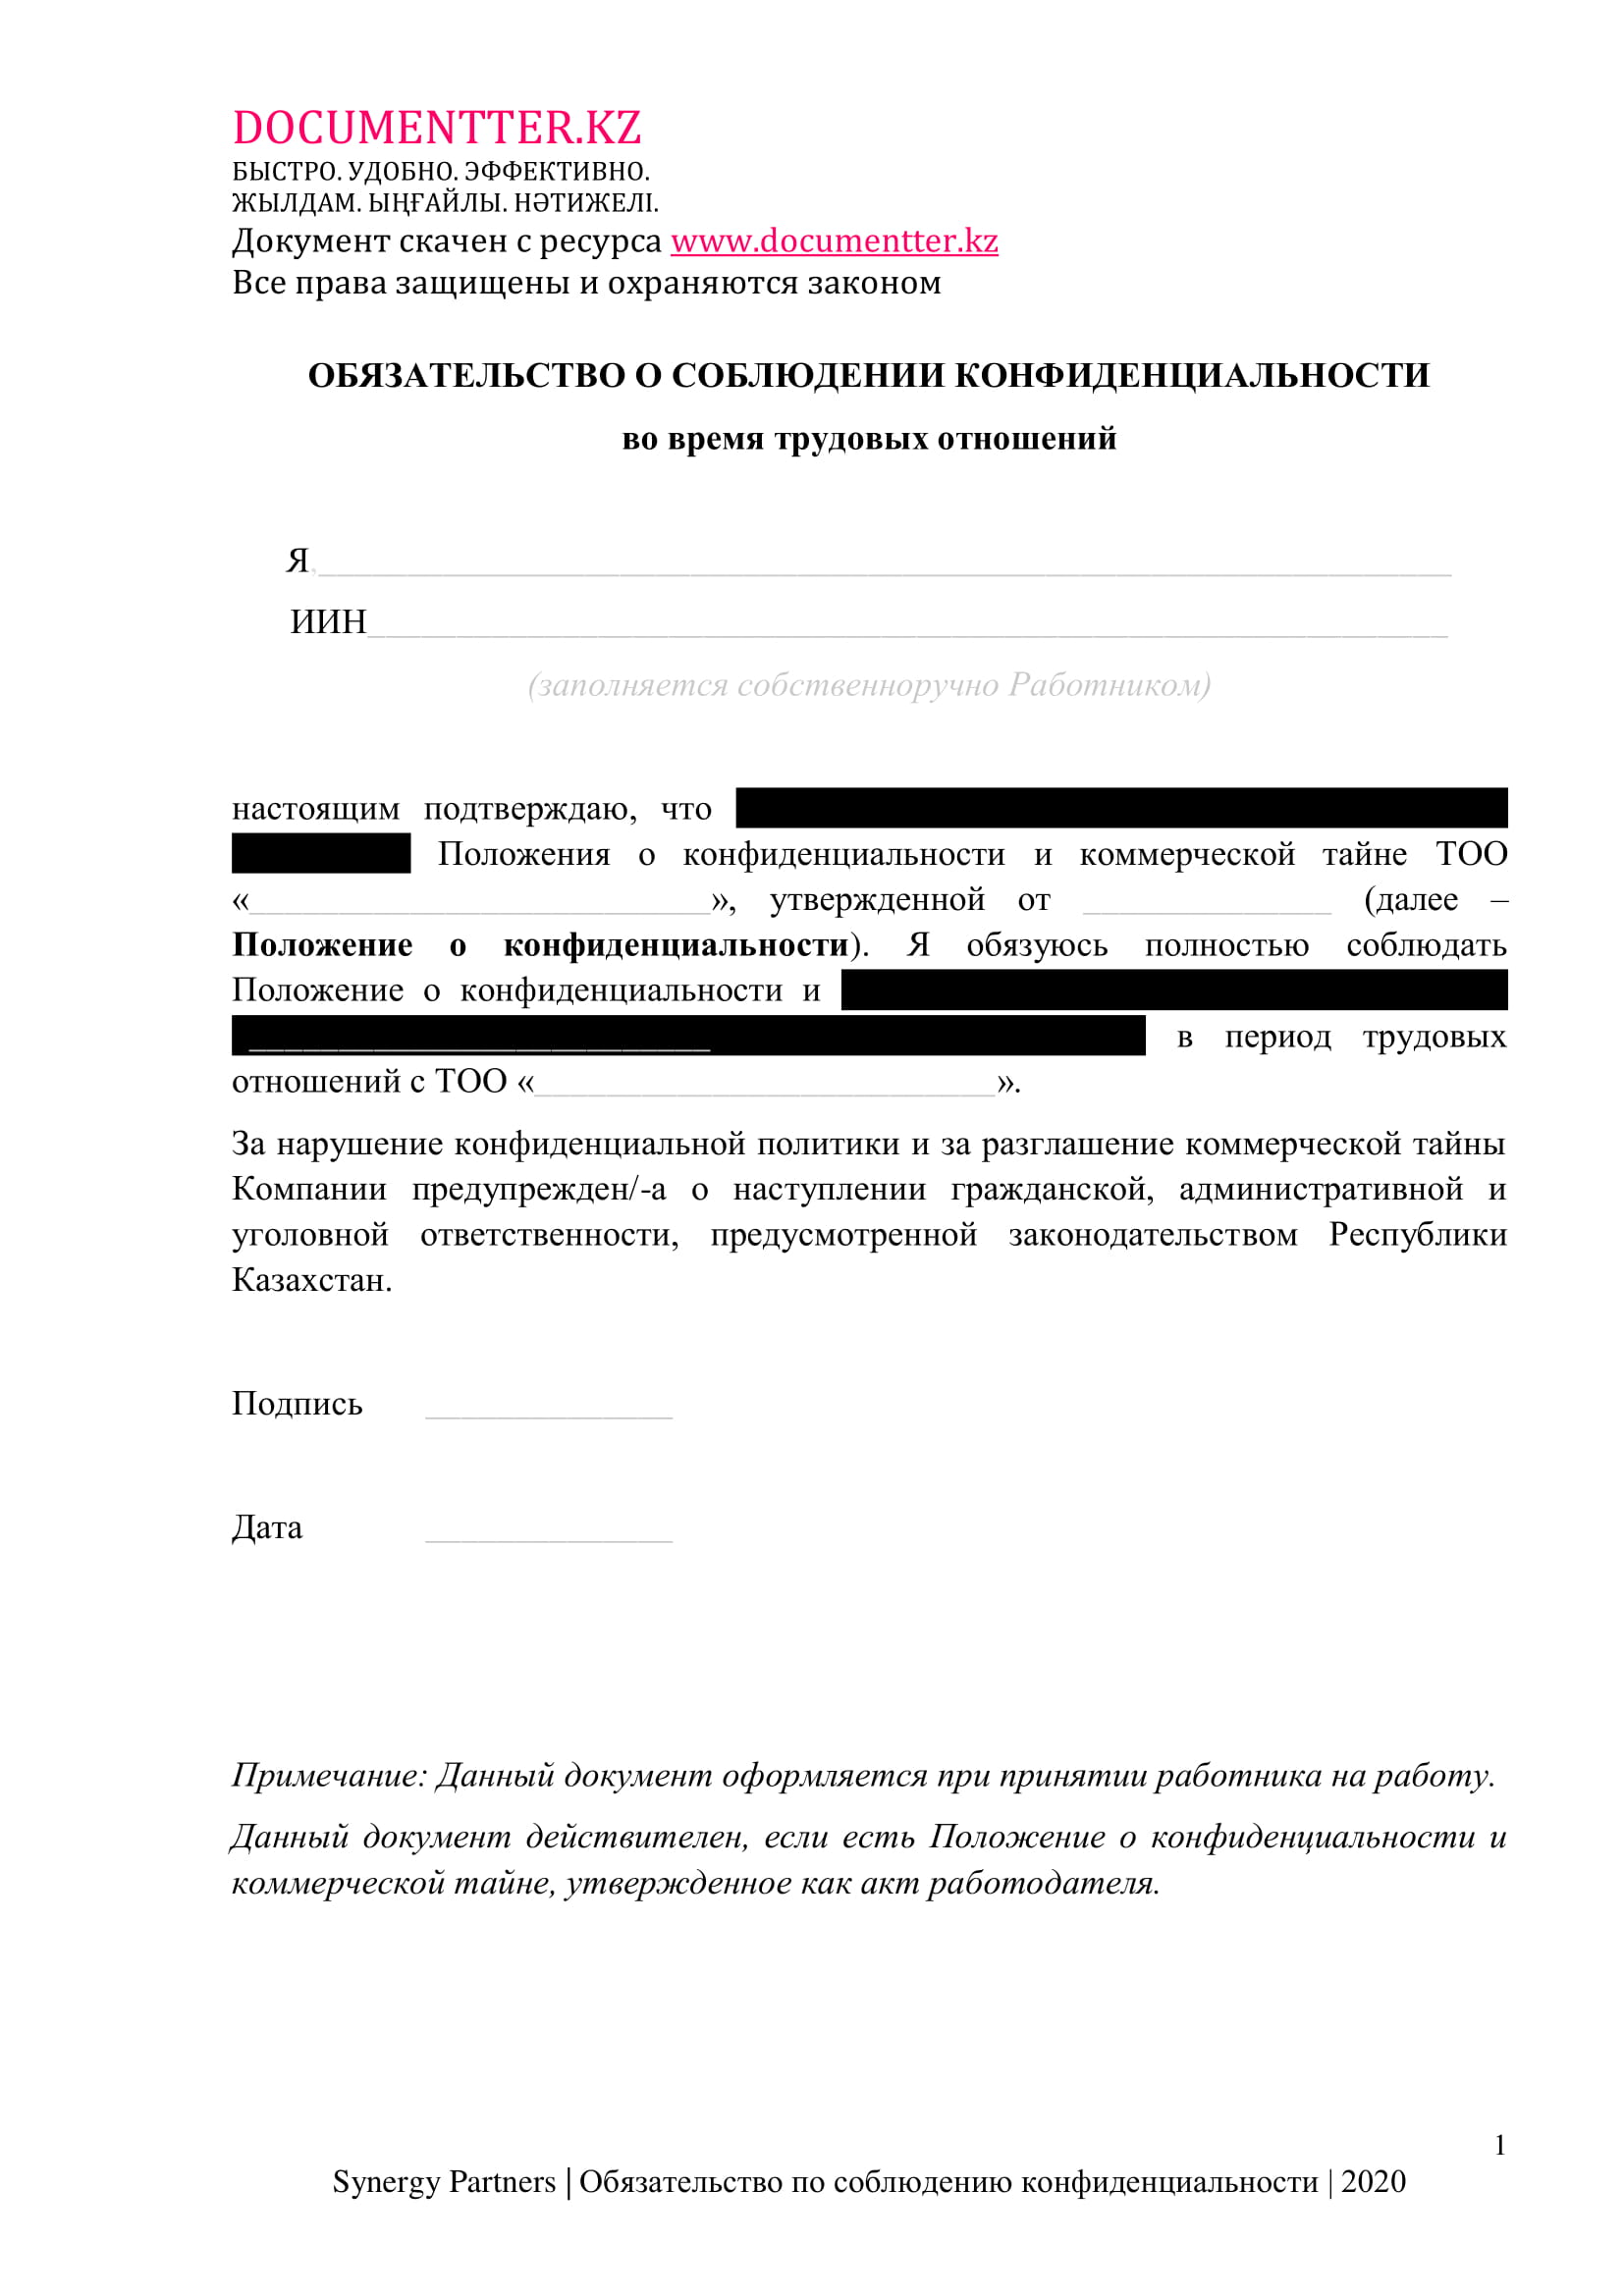 Обязательство по сохранению конфиденциальности во время работы | documentterkz.com в Казахстане